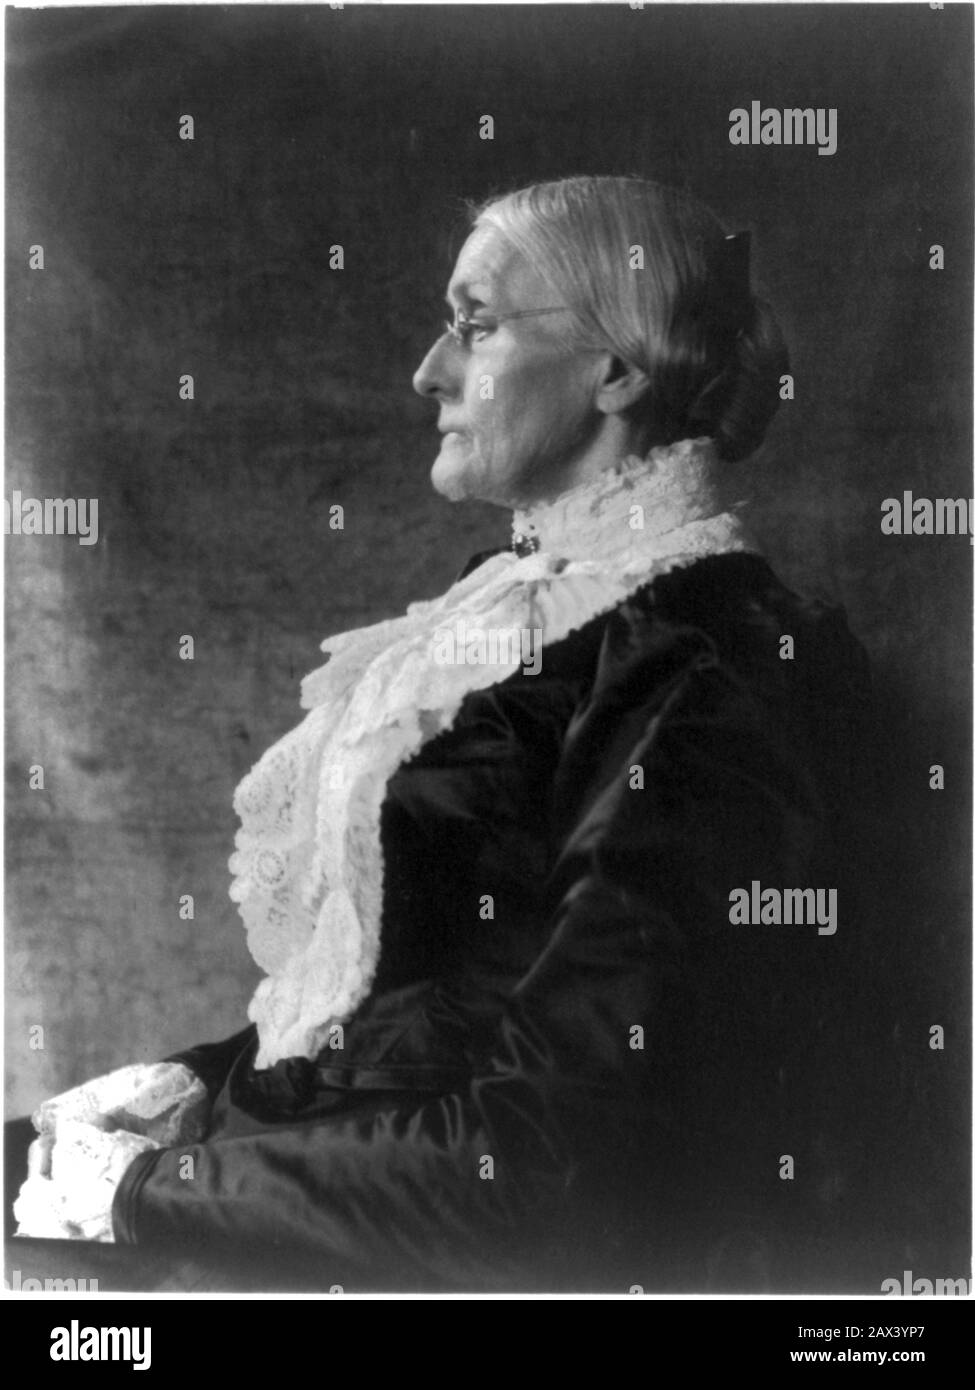 1895 ca , USA : The social activist abolitionist, and leading figure of the early woman's movement  SUSAN B. ANTHONY ( Susan Brownell , 1820 - 1906 ). Photo by  Frances Benjamin JOHNSTON ( 1864 - 1952 )  - SUFFRAGETTA - sufraggetta - Sufragist - POLITICO - POLITICIAN - POLITICA - POLITIC - FEMMINISMO - FEMMINISTA  - FEMMINISTE - SUFFRAGETTE - USA - ritratto - portrait  - FEMMINISM - FEMMINIST - SUFFRAGIO UNIVERSALE - VOTO POLITICO ALLE DONNE - FASHION - MODA  - OTTOCENTO - 800's - '800 - donna anziana vecchia - ancient old woman - lace - pizzo - profilo - profile - chignon - lens - occhiali da Stock Photo